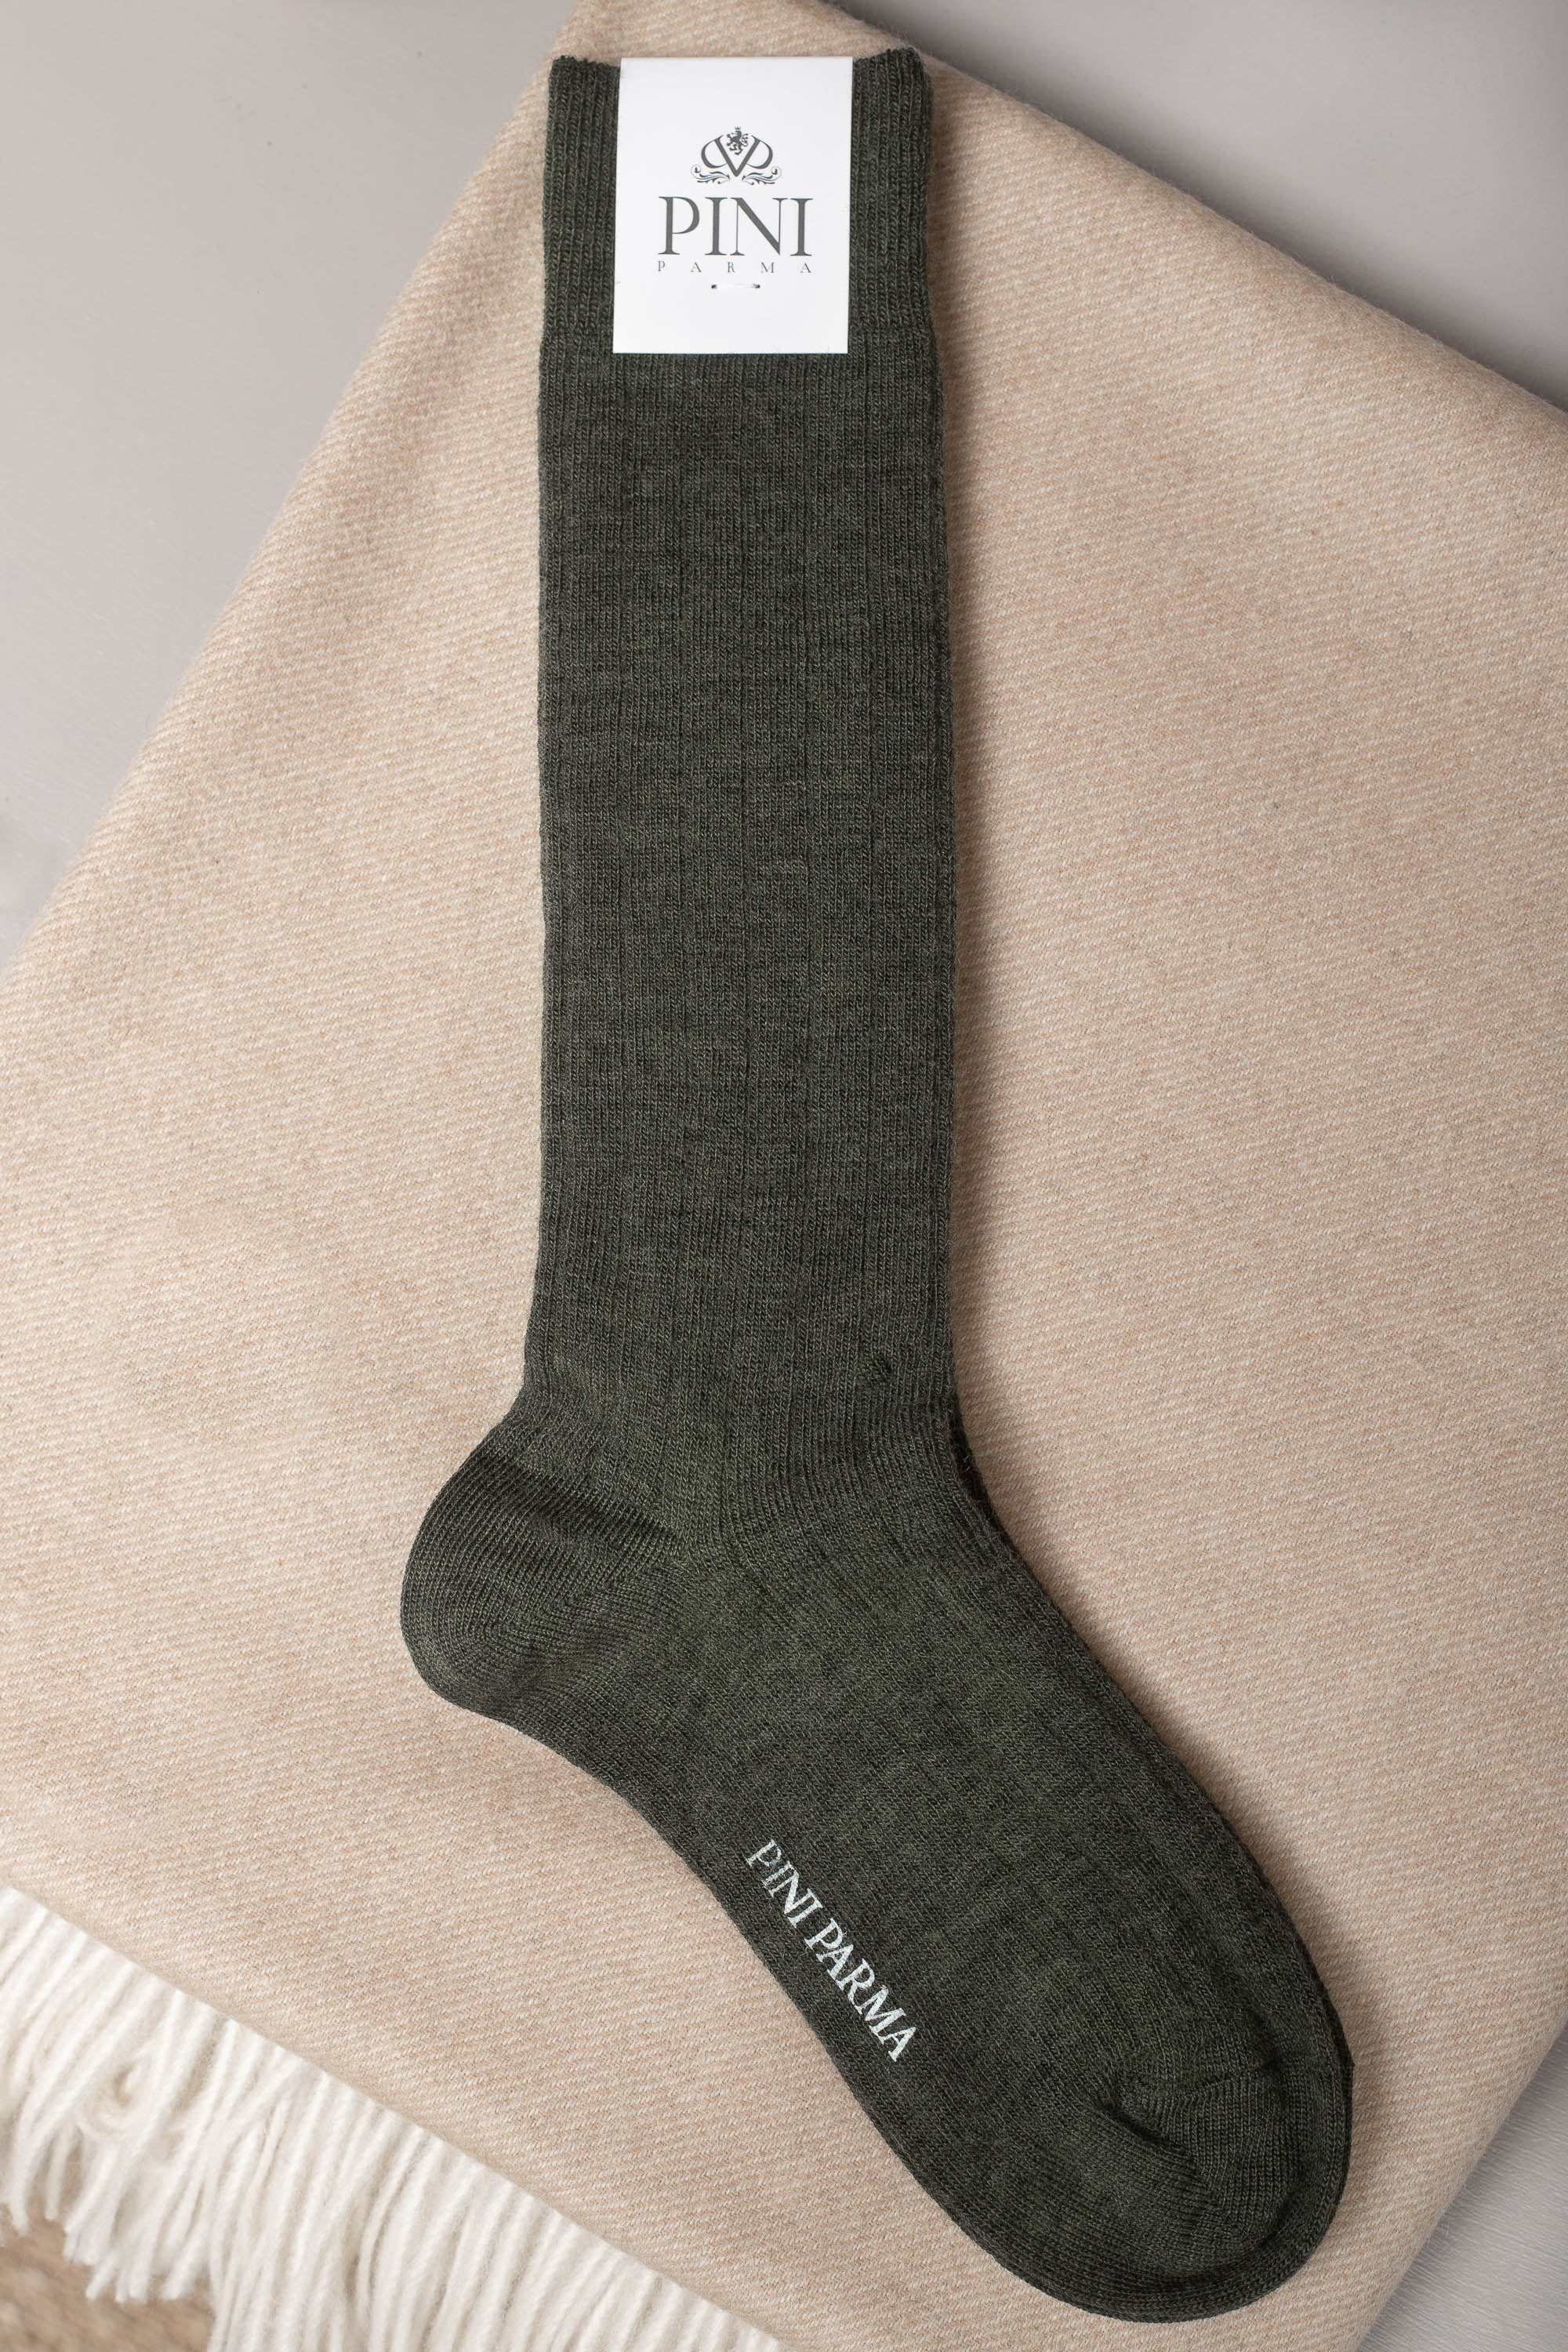 Vert - Chaussettes courtes en laine super résistantes - Made in Italy